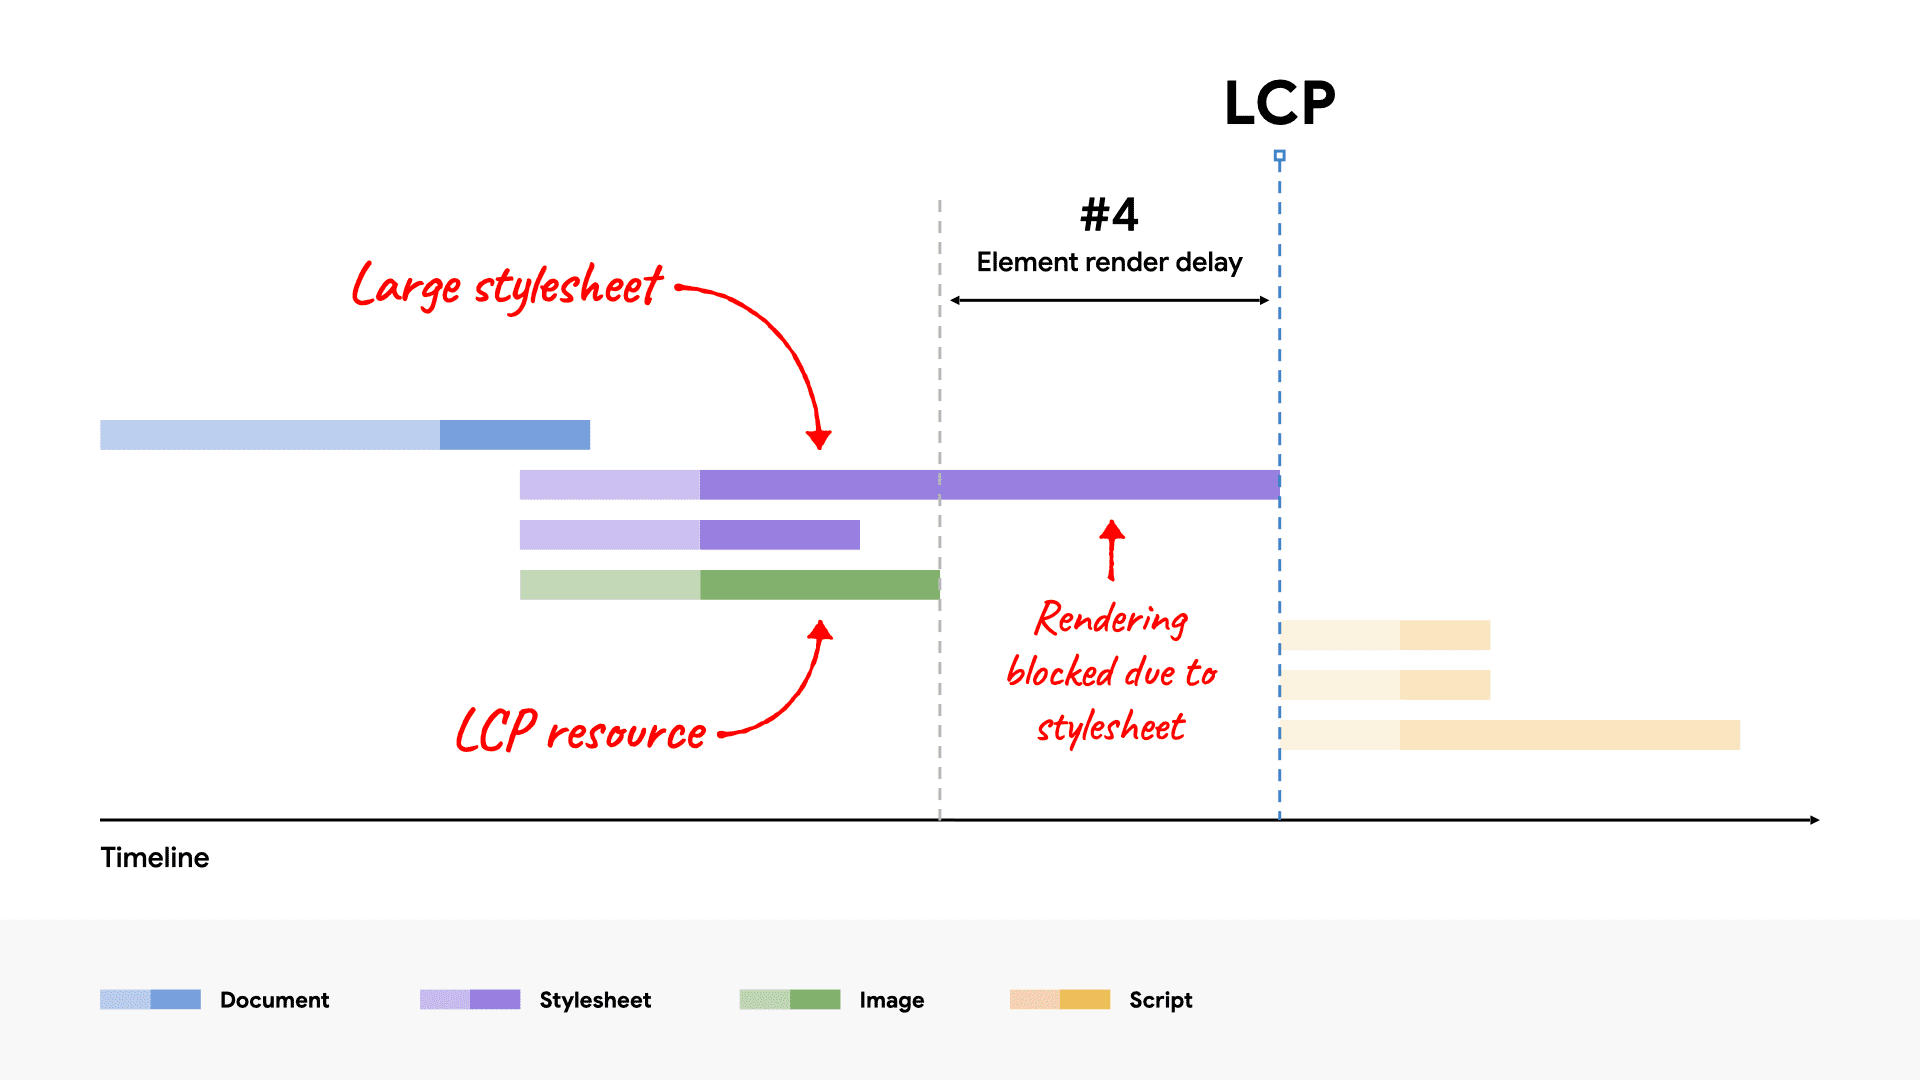 แผนภาพ Waterfall ของเครือข่ายแสดงการแสดงภาพการบล็อกไฟล์ CSS ขนาดใหญ่ขององค์ประกอบ LCP เนื่องจากใช้เวลาโหลดนานกว่าทรัพยากร LCP